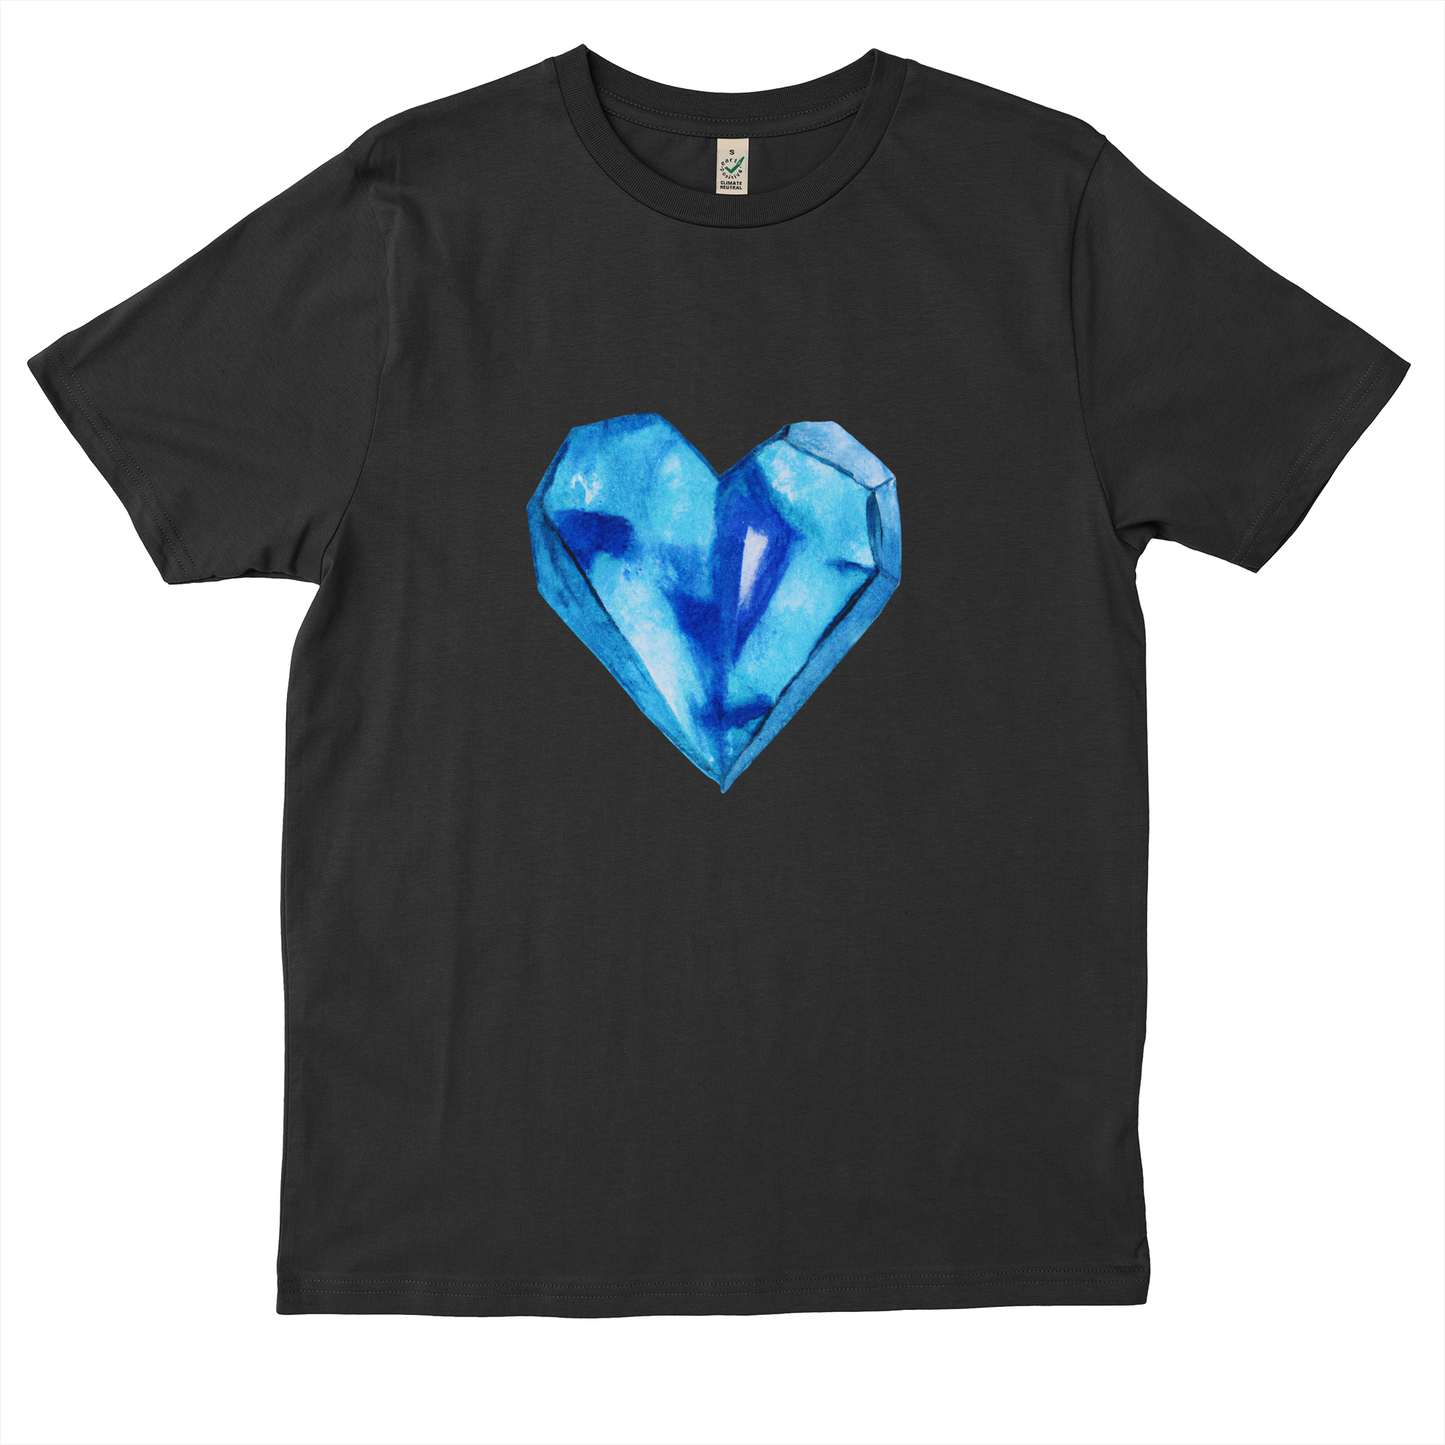 Diamond heart - Organic Light T-Shirt